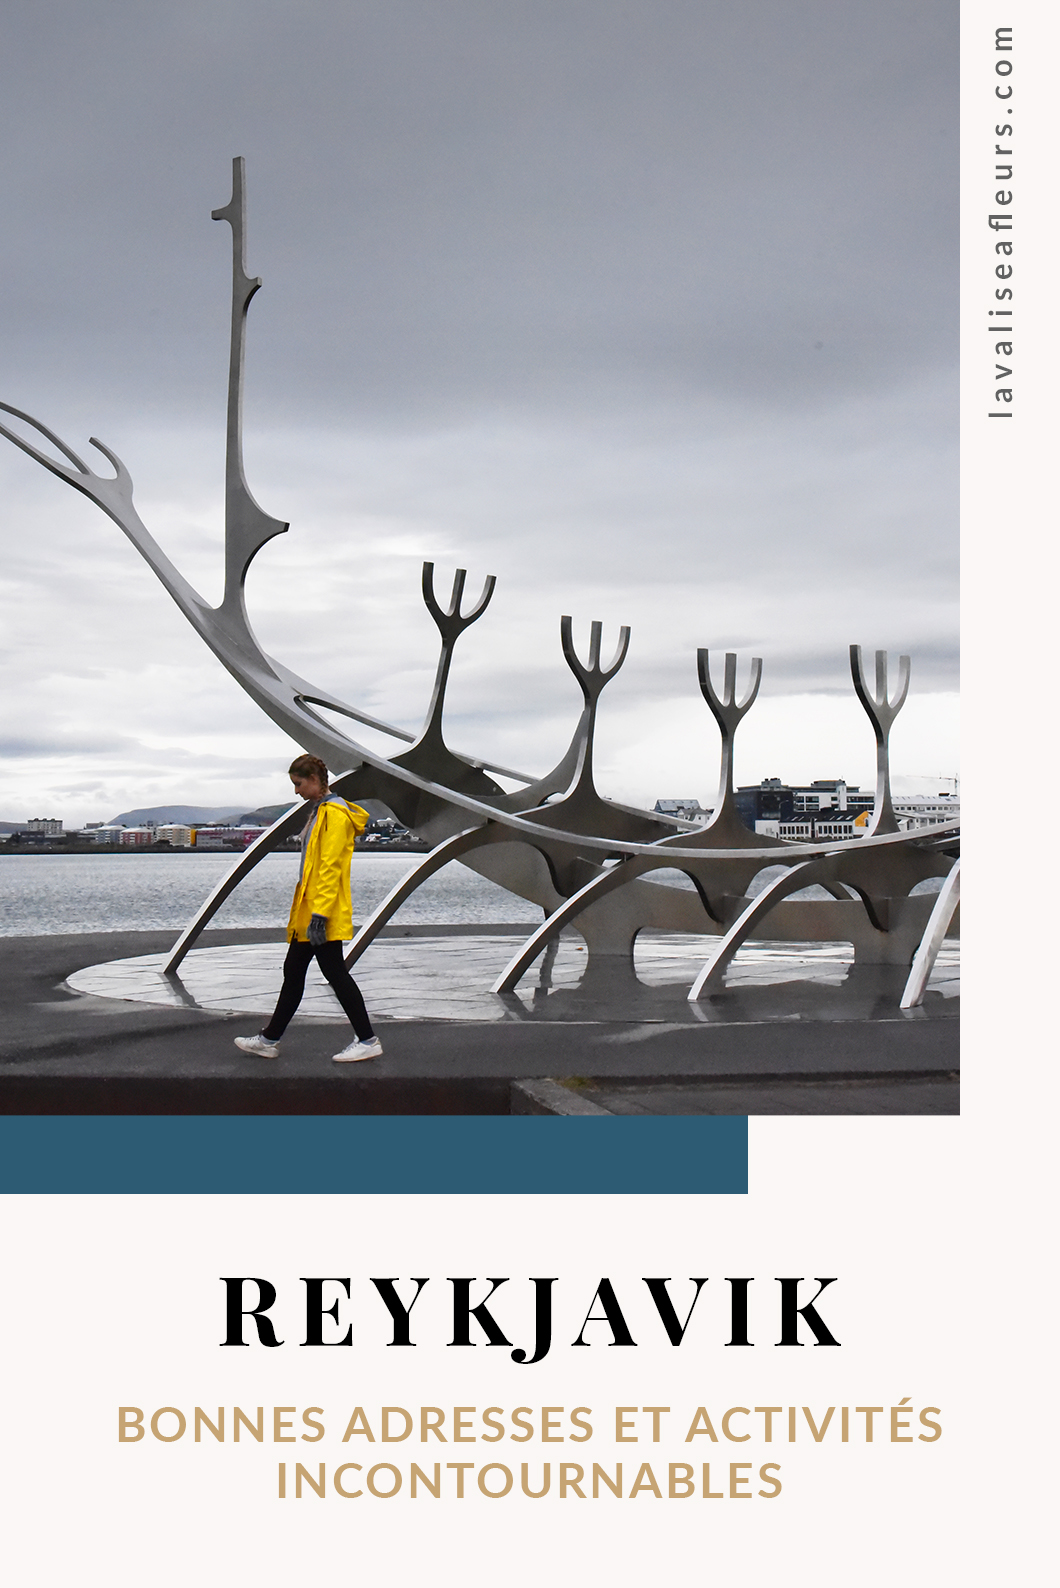 Bonnes adresses et activités incontournables à Reykjavik